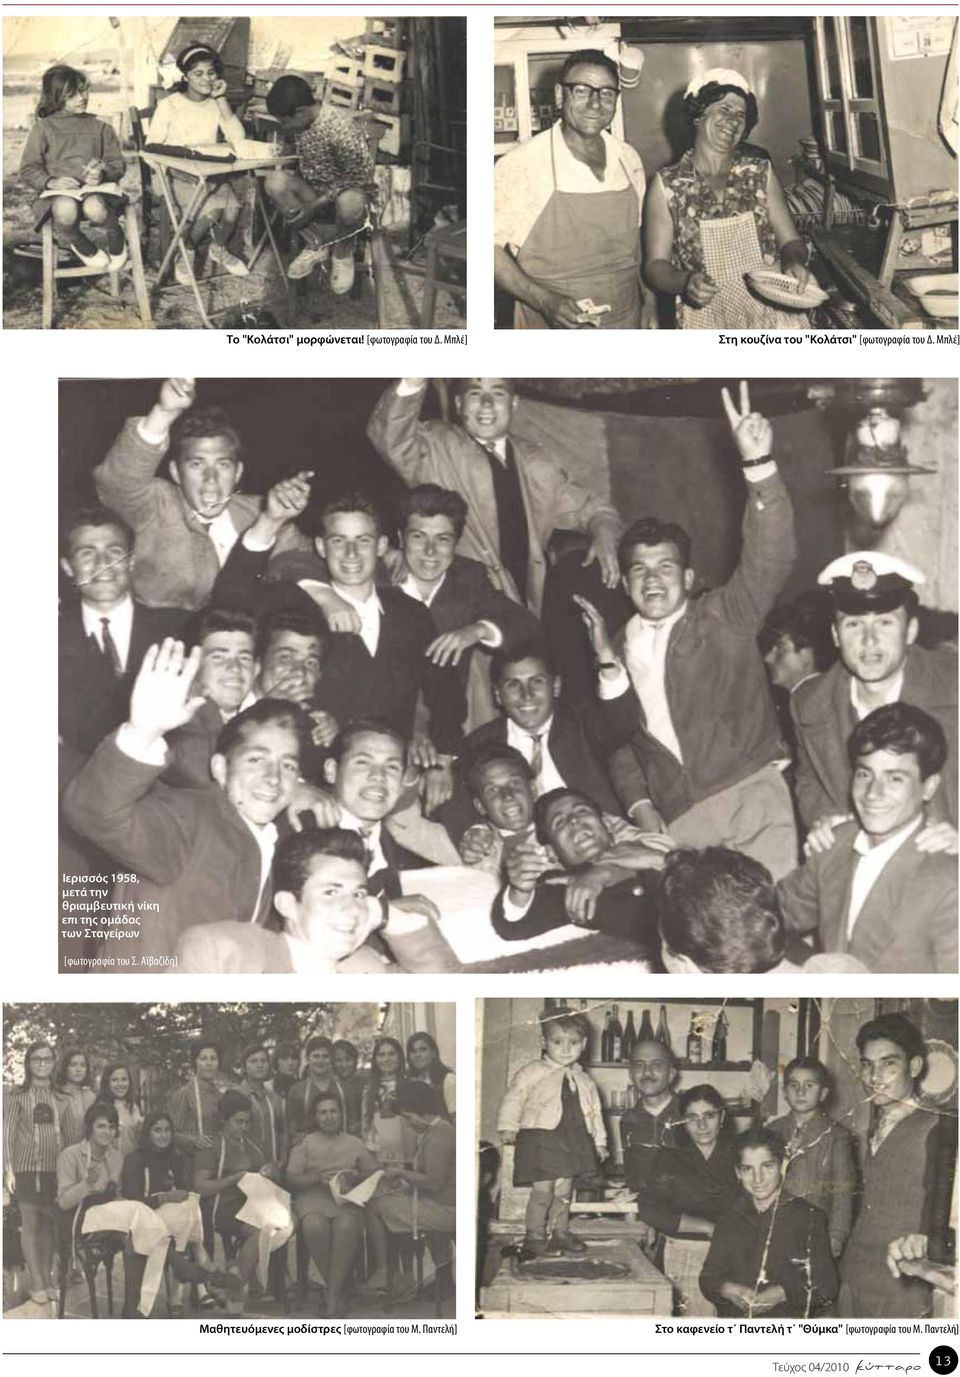 Μπλέ] Ιερισσός 1958, μετά την θριαμβευτική νίκη επι της ομάδας των Σταγείρων